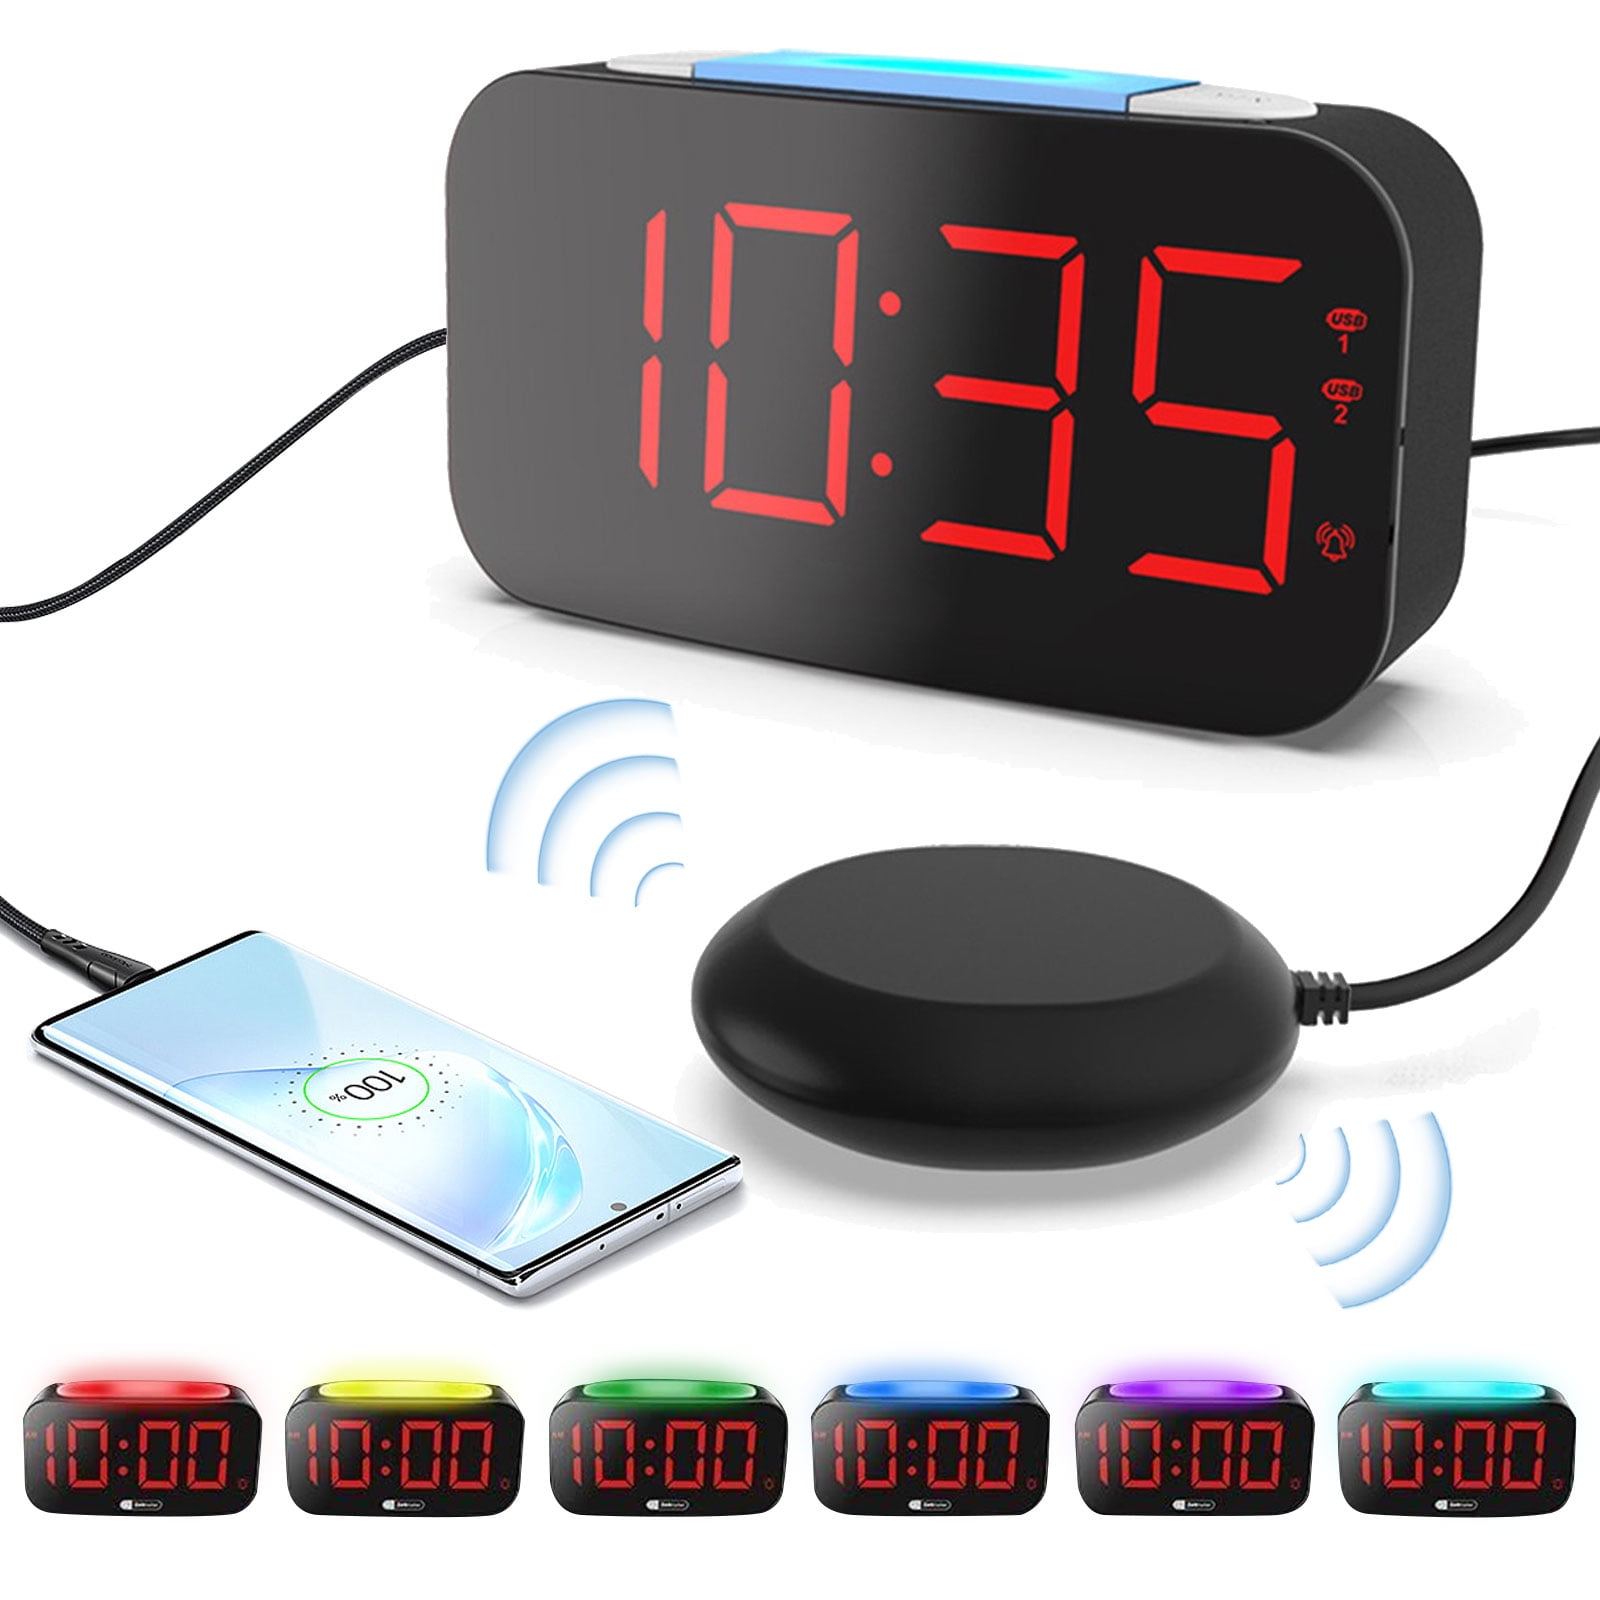 Despertador ruidoso para durmientes pesados Reloj despertador vibrador con  agitador de cama para sordos y personas con problemas de audición